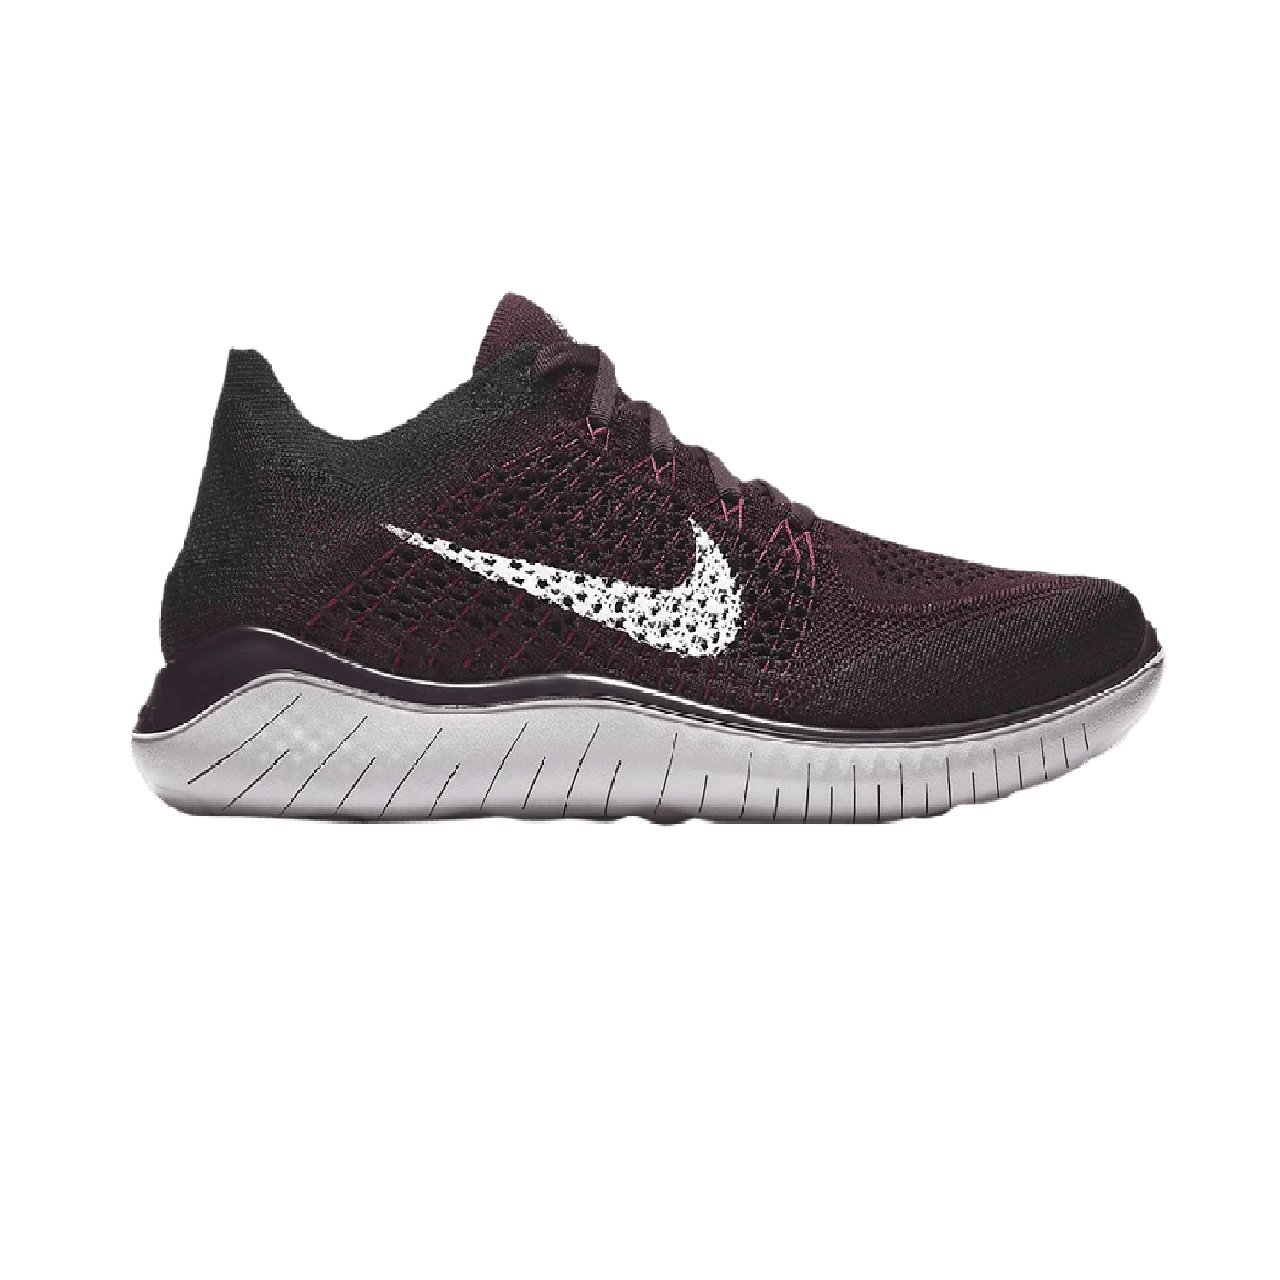 Спортивная обувь m Nike Free RN Flyknit 2018 burgundy ash/white-black-atmosphere grey